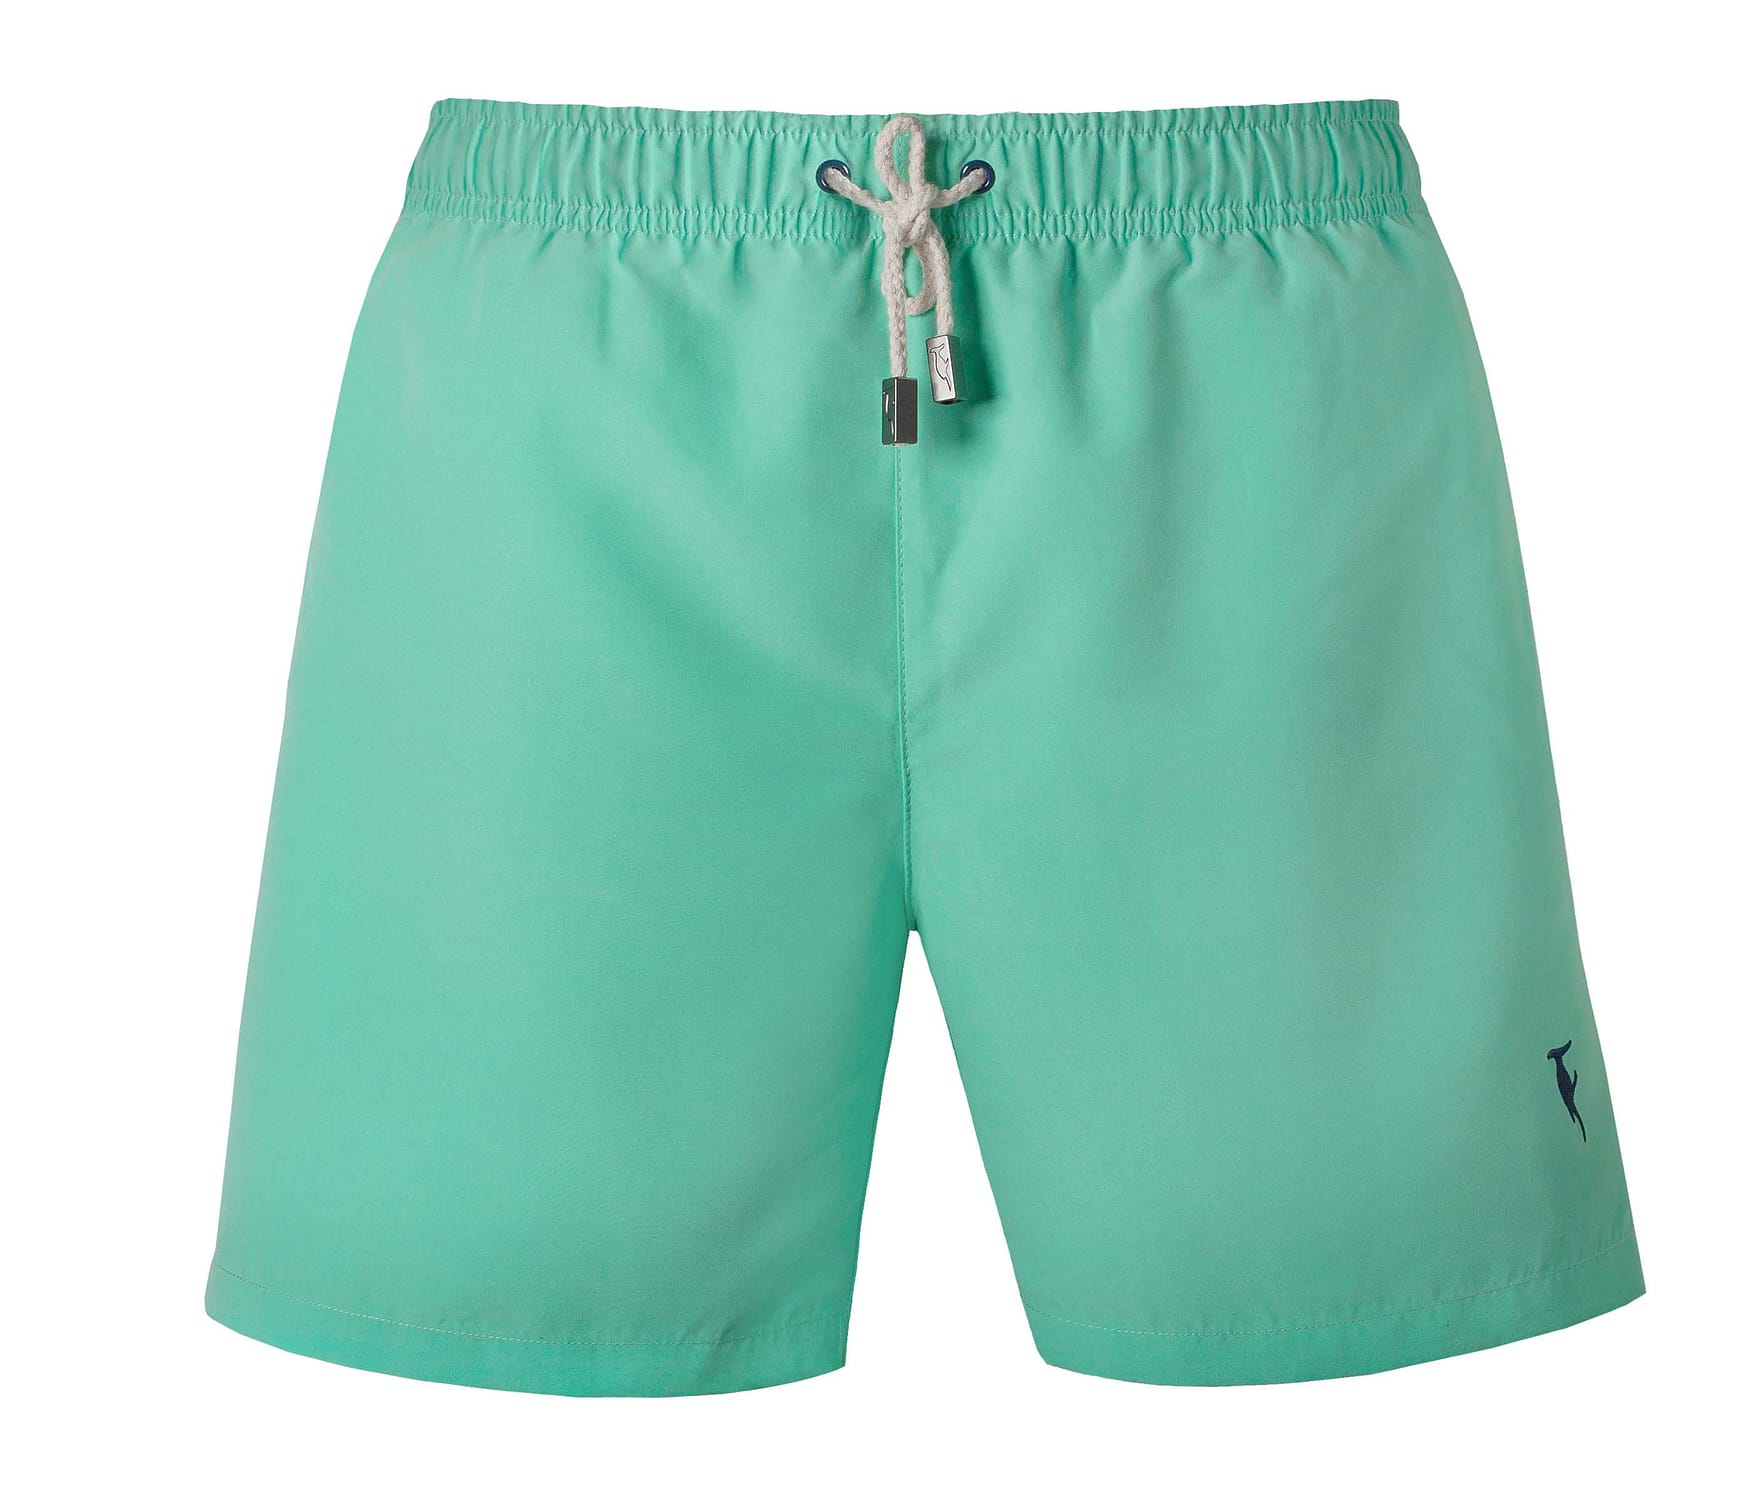 swim shorts image